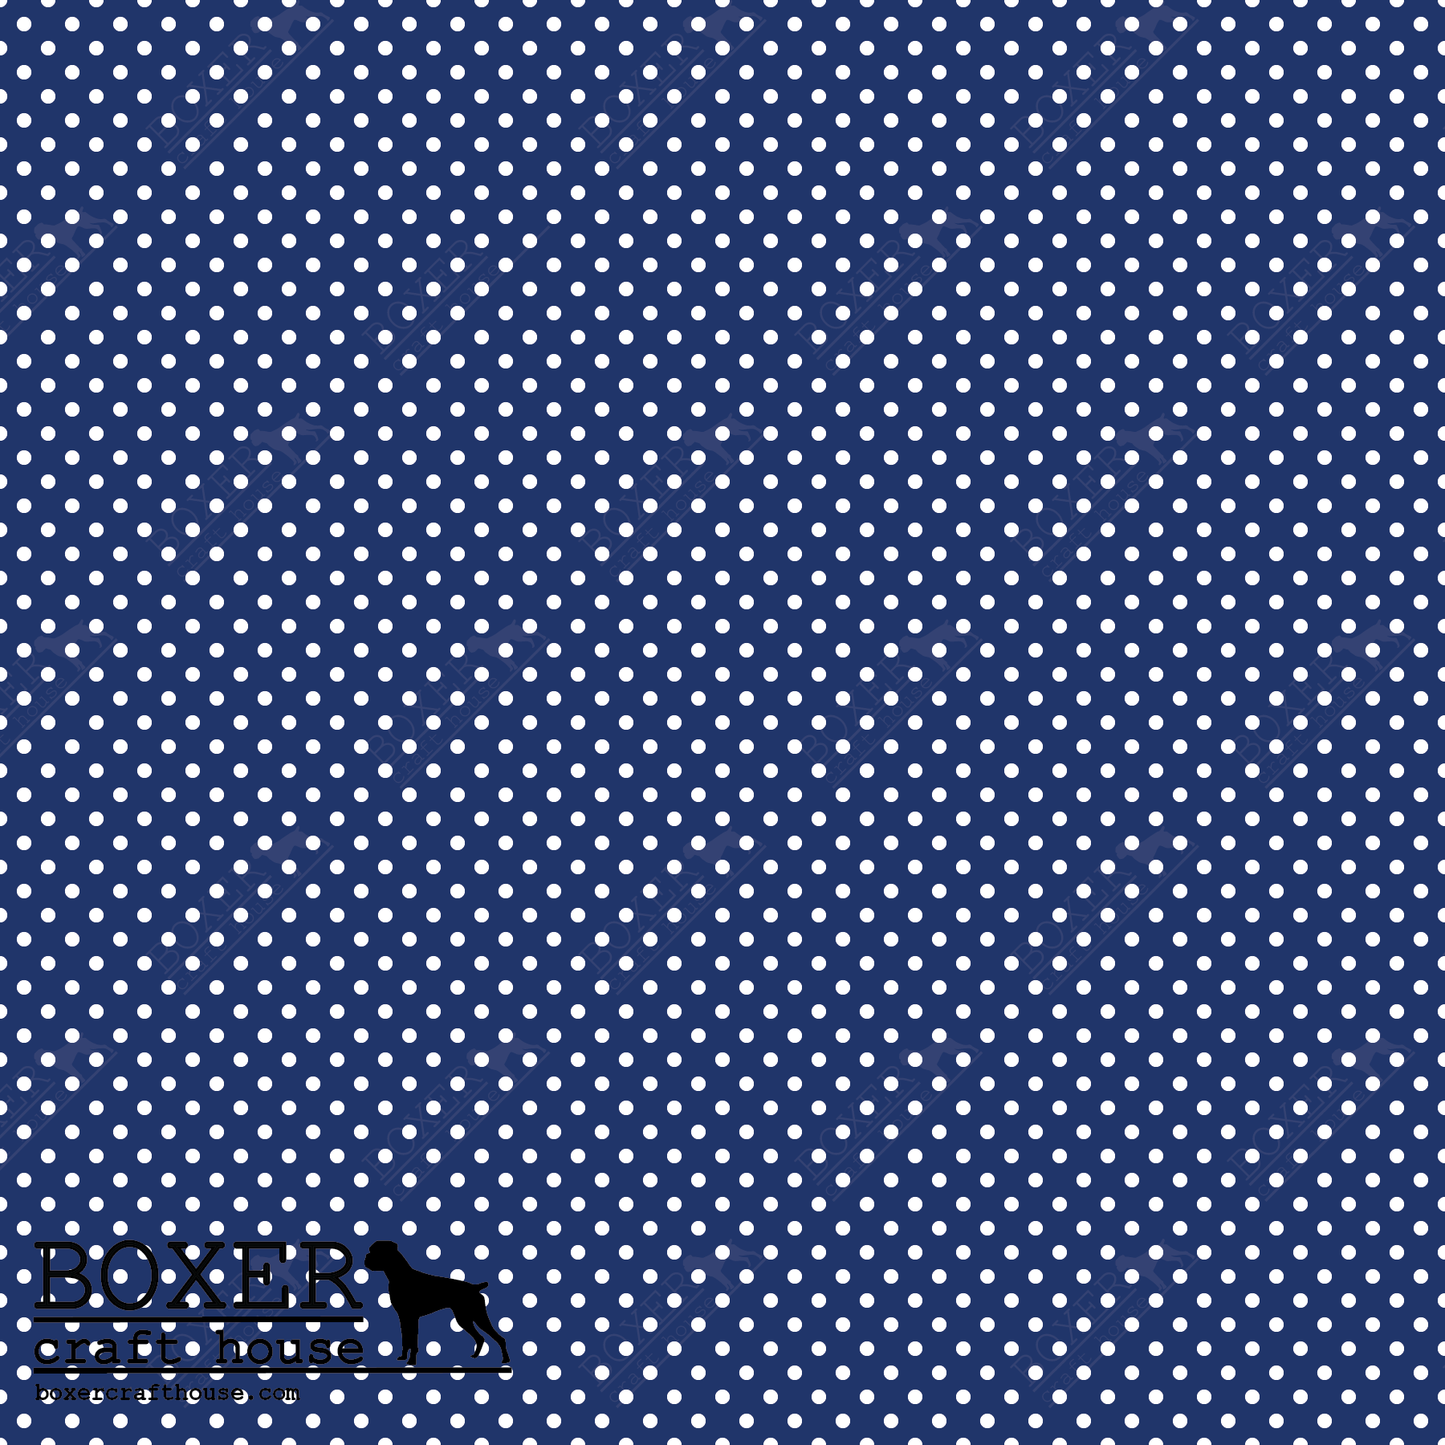 HTV Patterns - Dots - Dodger Blue 1/16"